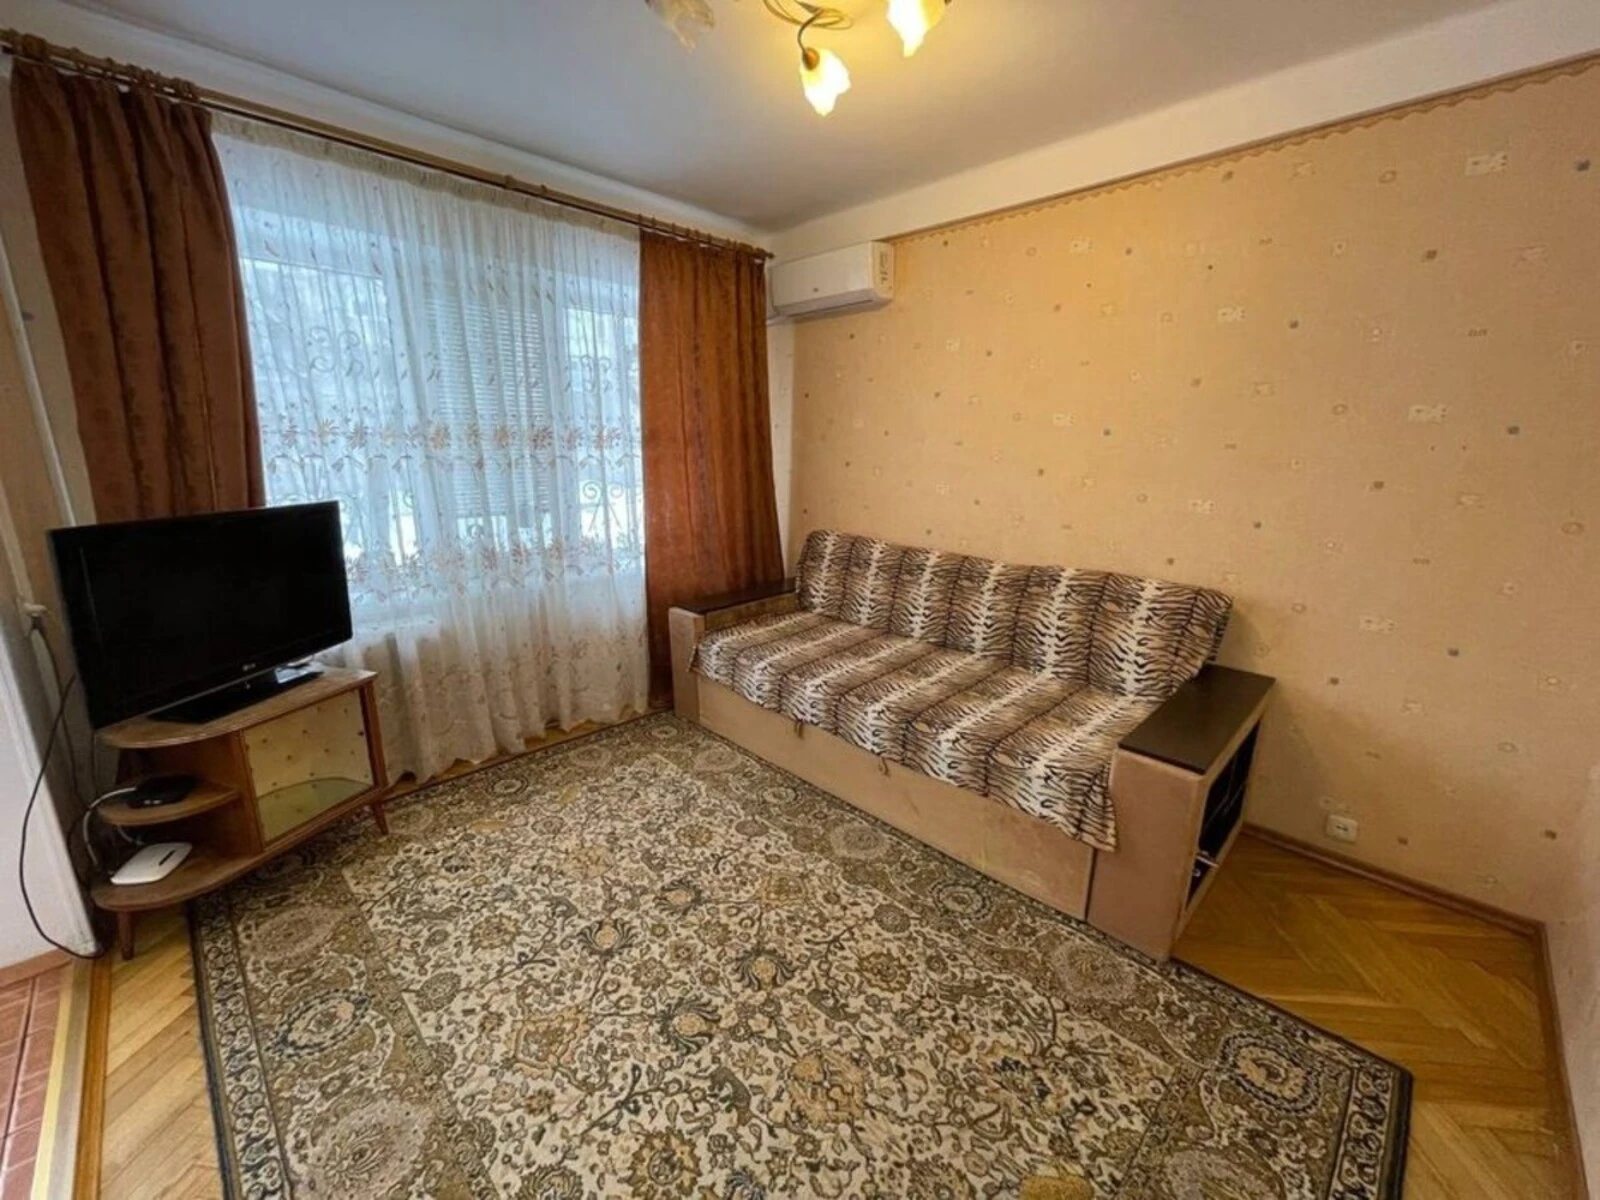 Продам 2-х кімнатну квартиру, Шевченківський р-н, вул.Турчина 11а